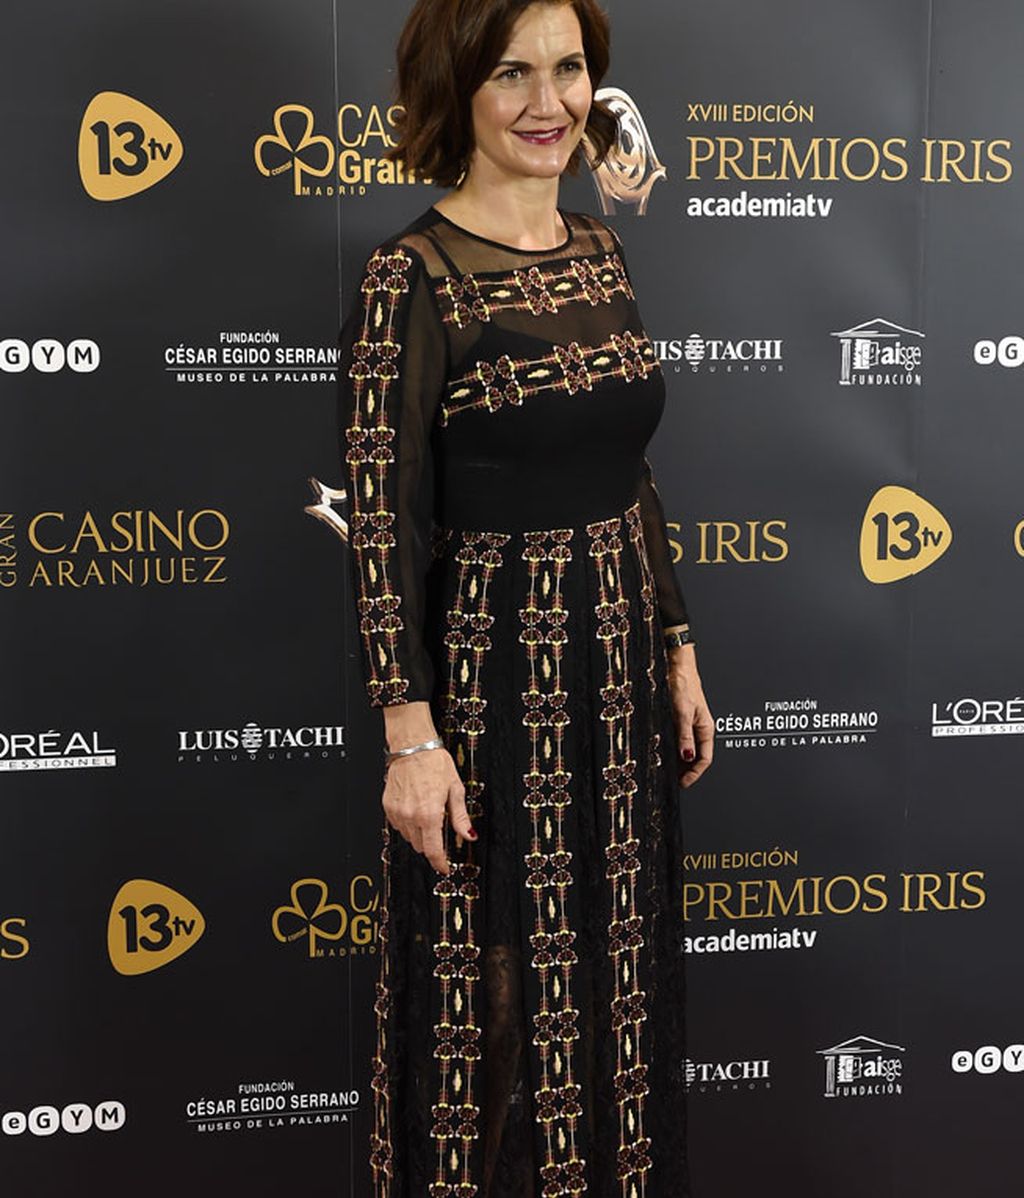 Ivonne Reyes, Ana Obregón, Vanessa Romero... Vips de la 'tele' en los Premios Iris